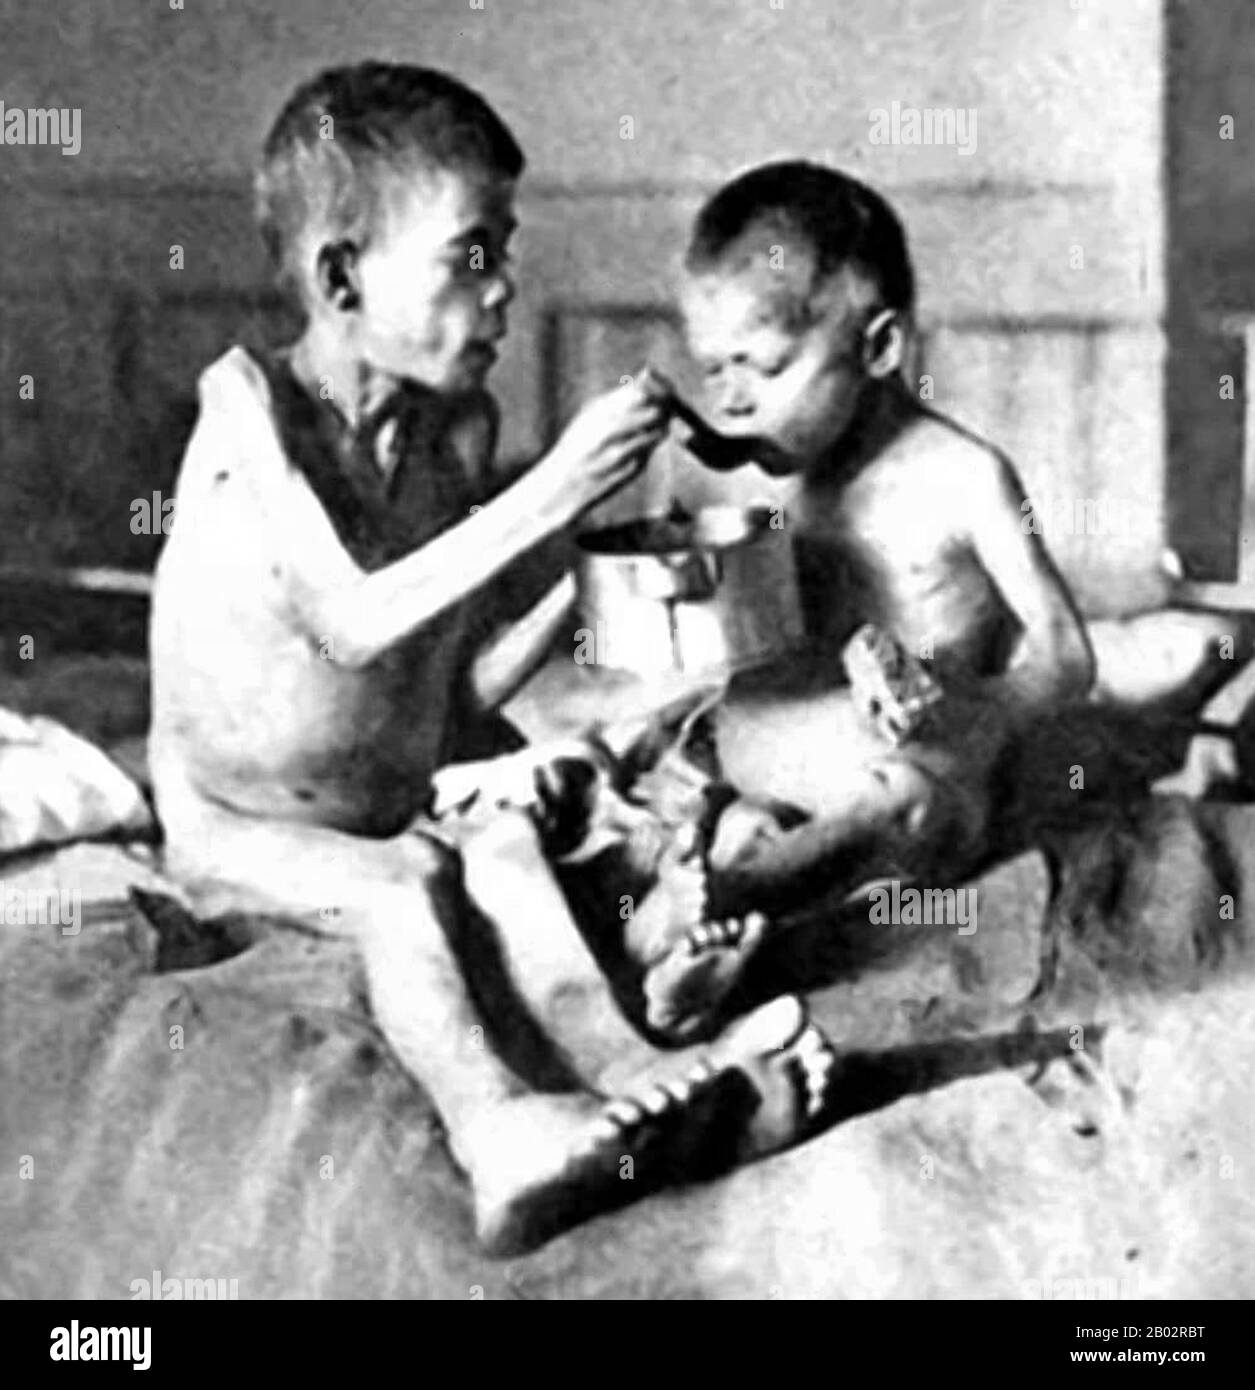 Der Holodomor war eine vom Menschen gemachte Hungersnot in der ukrainischen Sozialistischen Sowjetrepublik in den Jahren 1932 und 1933, bei der schätzungsweise 2,5-7,5 Millionen Ukrainer getötet wurden, wobei Millionen mehr in demographischen Schätzungen gezählt wurden. Es war Teil der größeren Katastrophe, der sowjetischen Hungersnot von 1932-33, die die großen Getreideanbaugebiete des Landes betraf. Während des Holodomors starben Millionen von Bürgern der ukrainischen SSR, von denen die meisten ethnische Ukrainer waren, in einer in der Geschichte der Ukraine beispiellosen Friedenskatastrophe am Hunger.Seit 2006 wird der Holodomor von der unabhängigen Ukraine a anerkannt Stockfoto